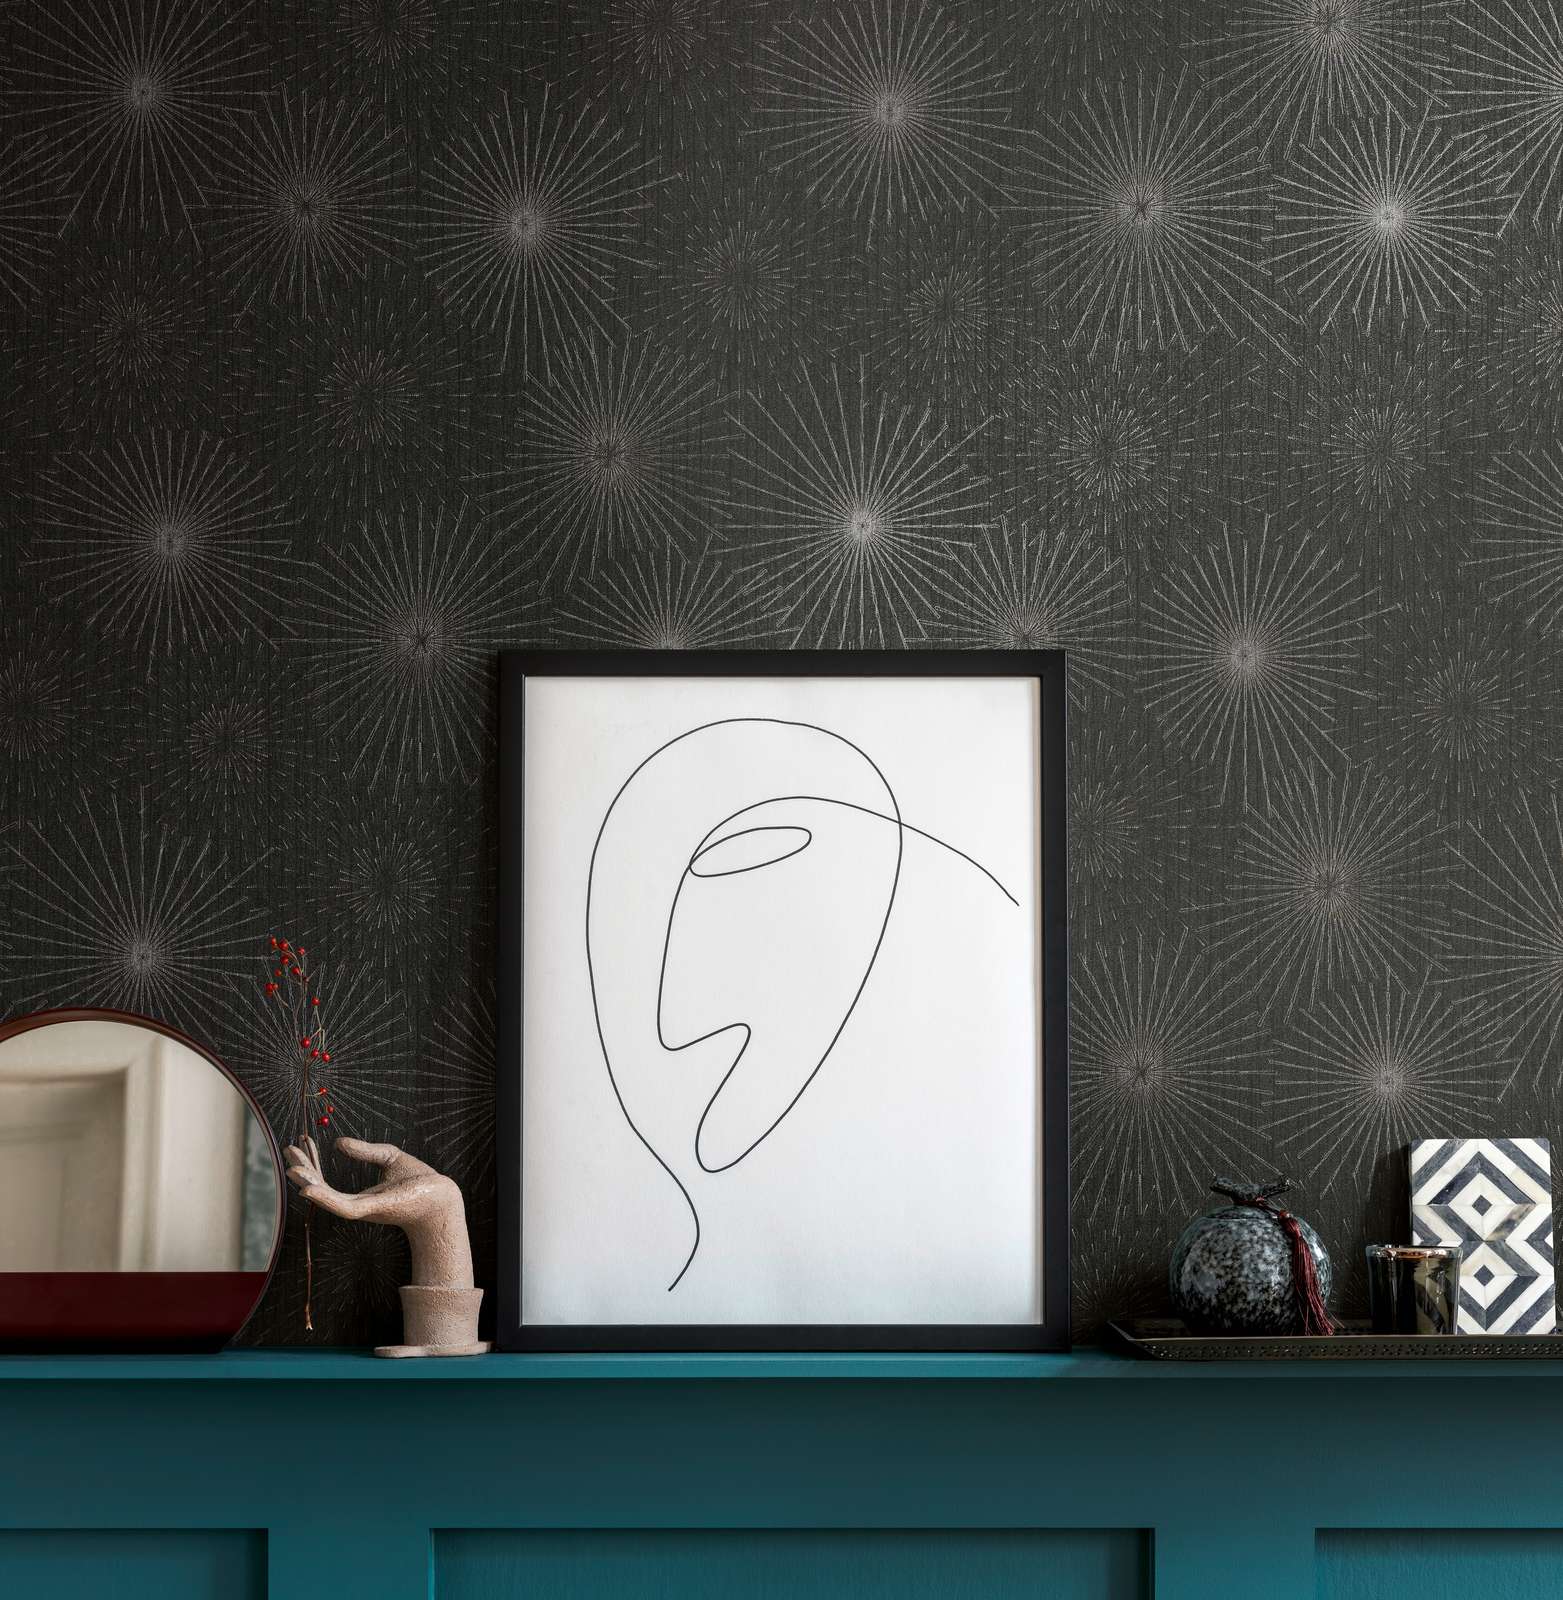             Retro wallpaper 50s starburst motif - black, metallic
        